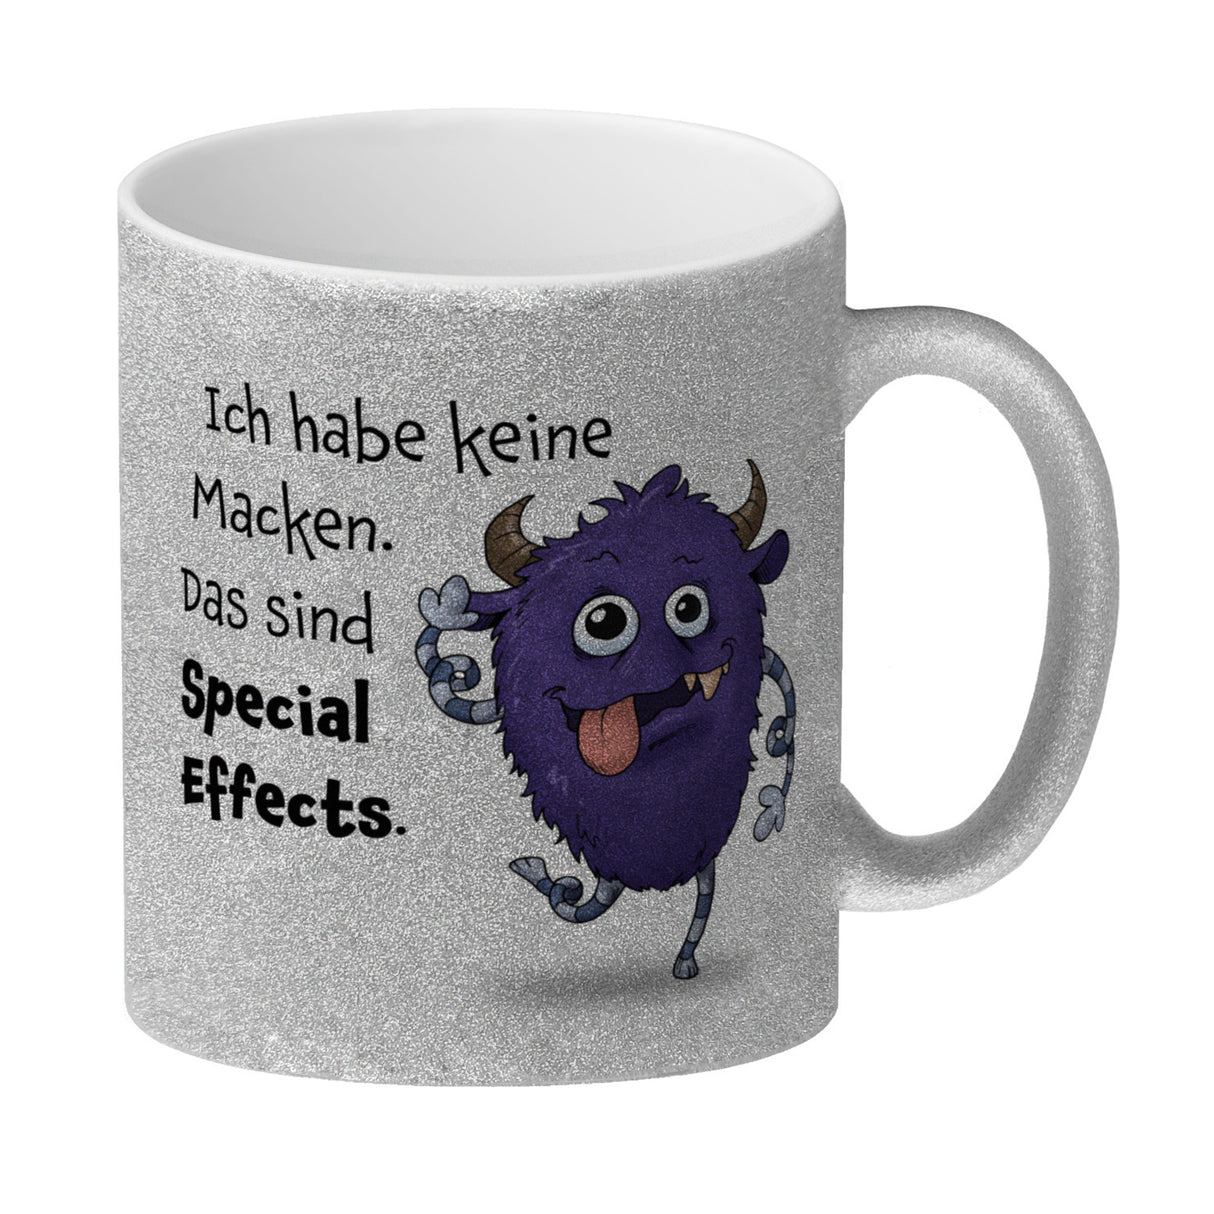 Freches Monster in lila Kaffeebecher mit lustigem Spruch